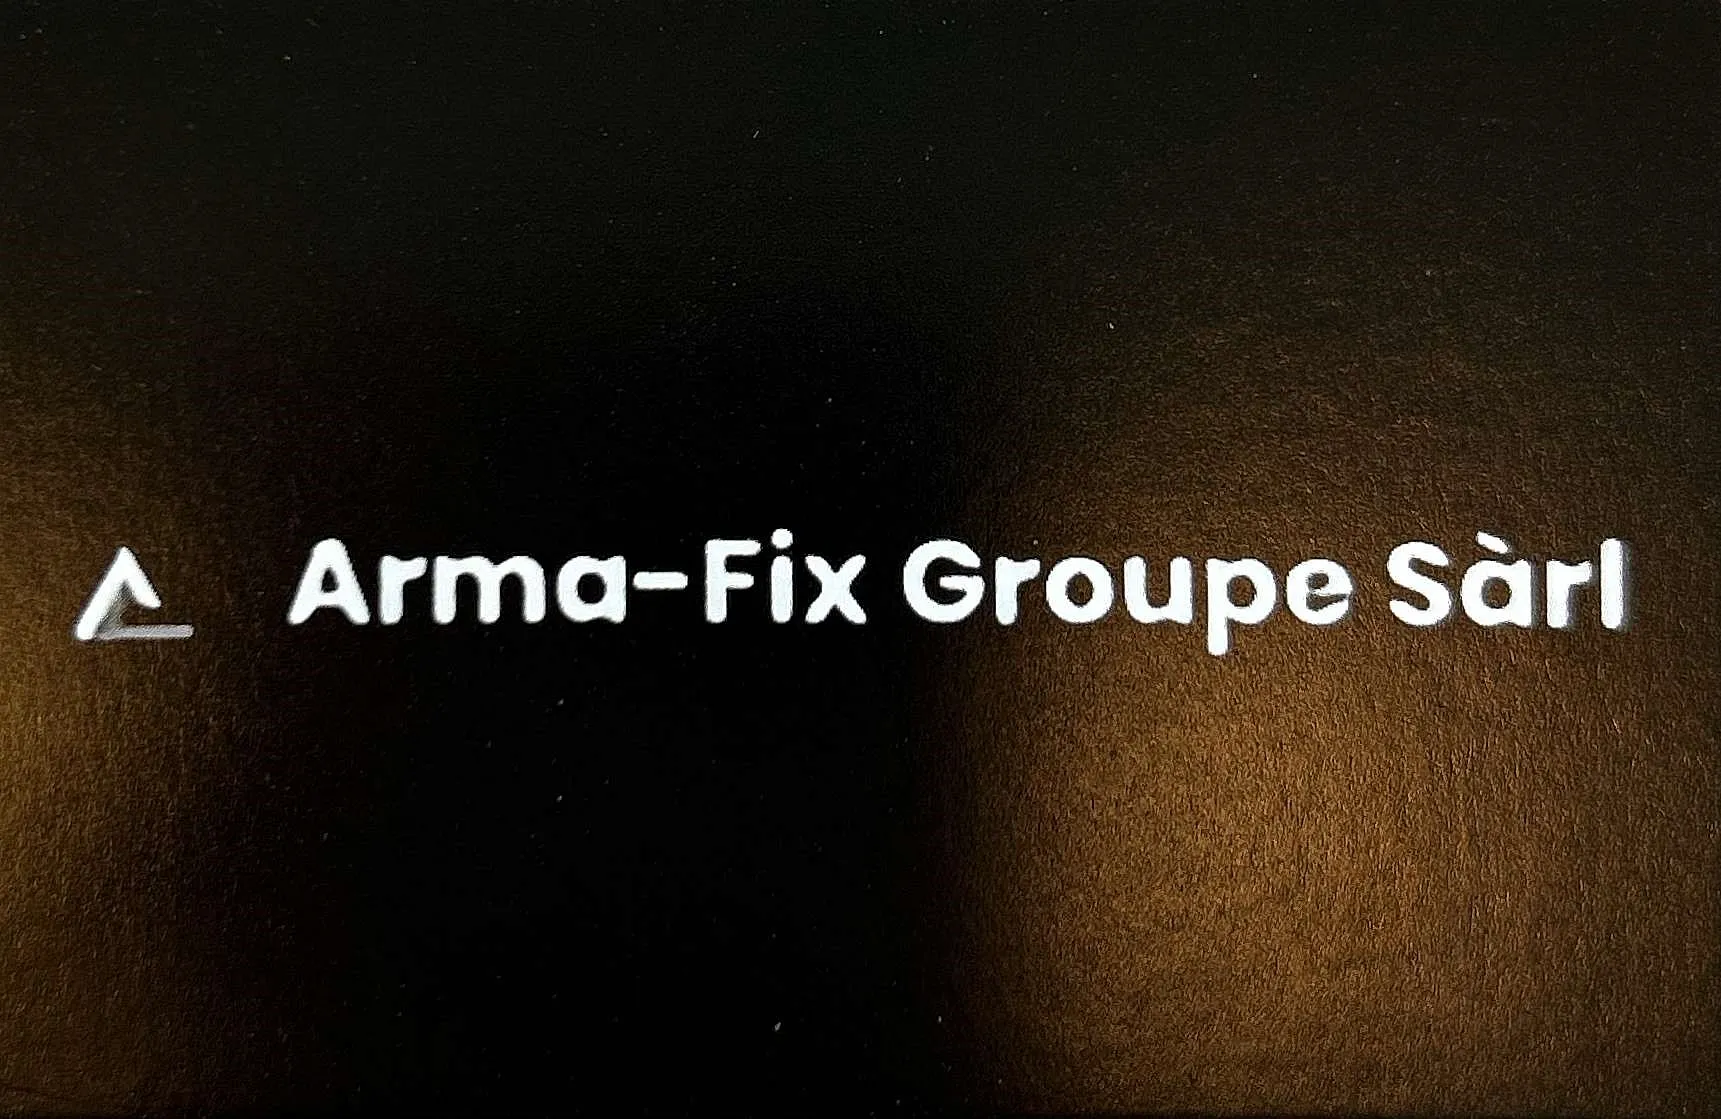 Arma-Fix Groupe Sàrl